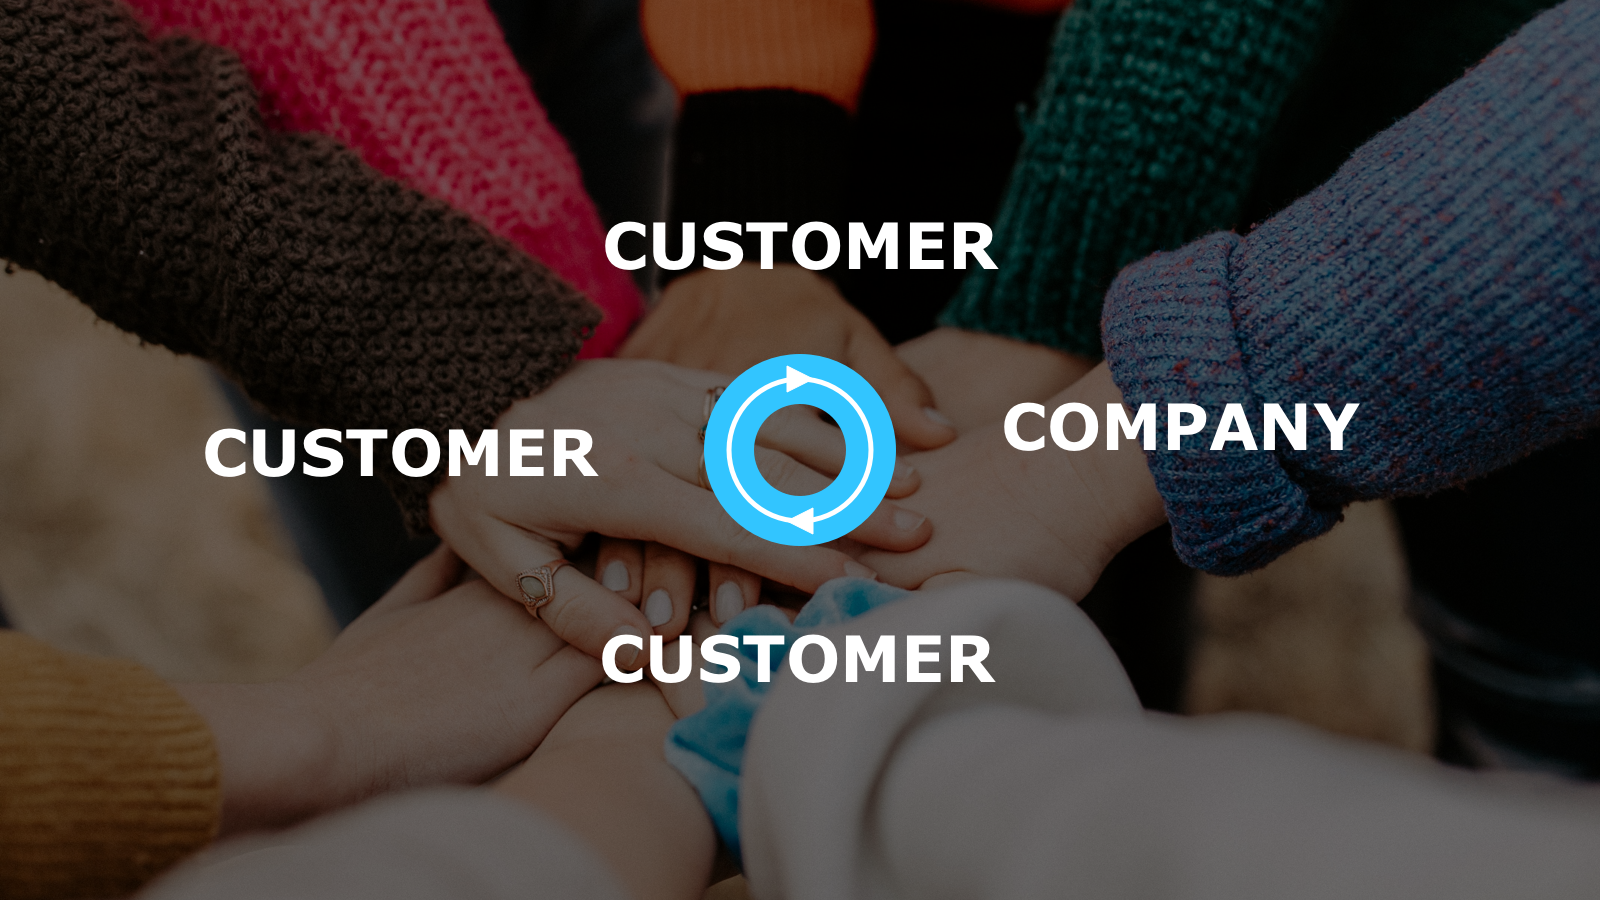 Customer feedback loop between customers and a company